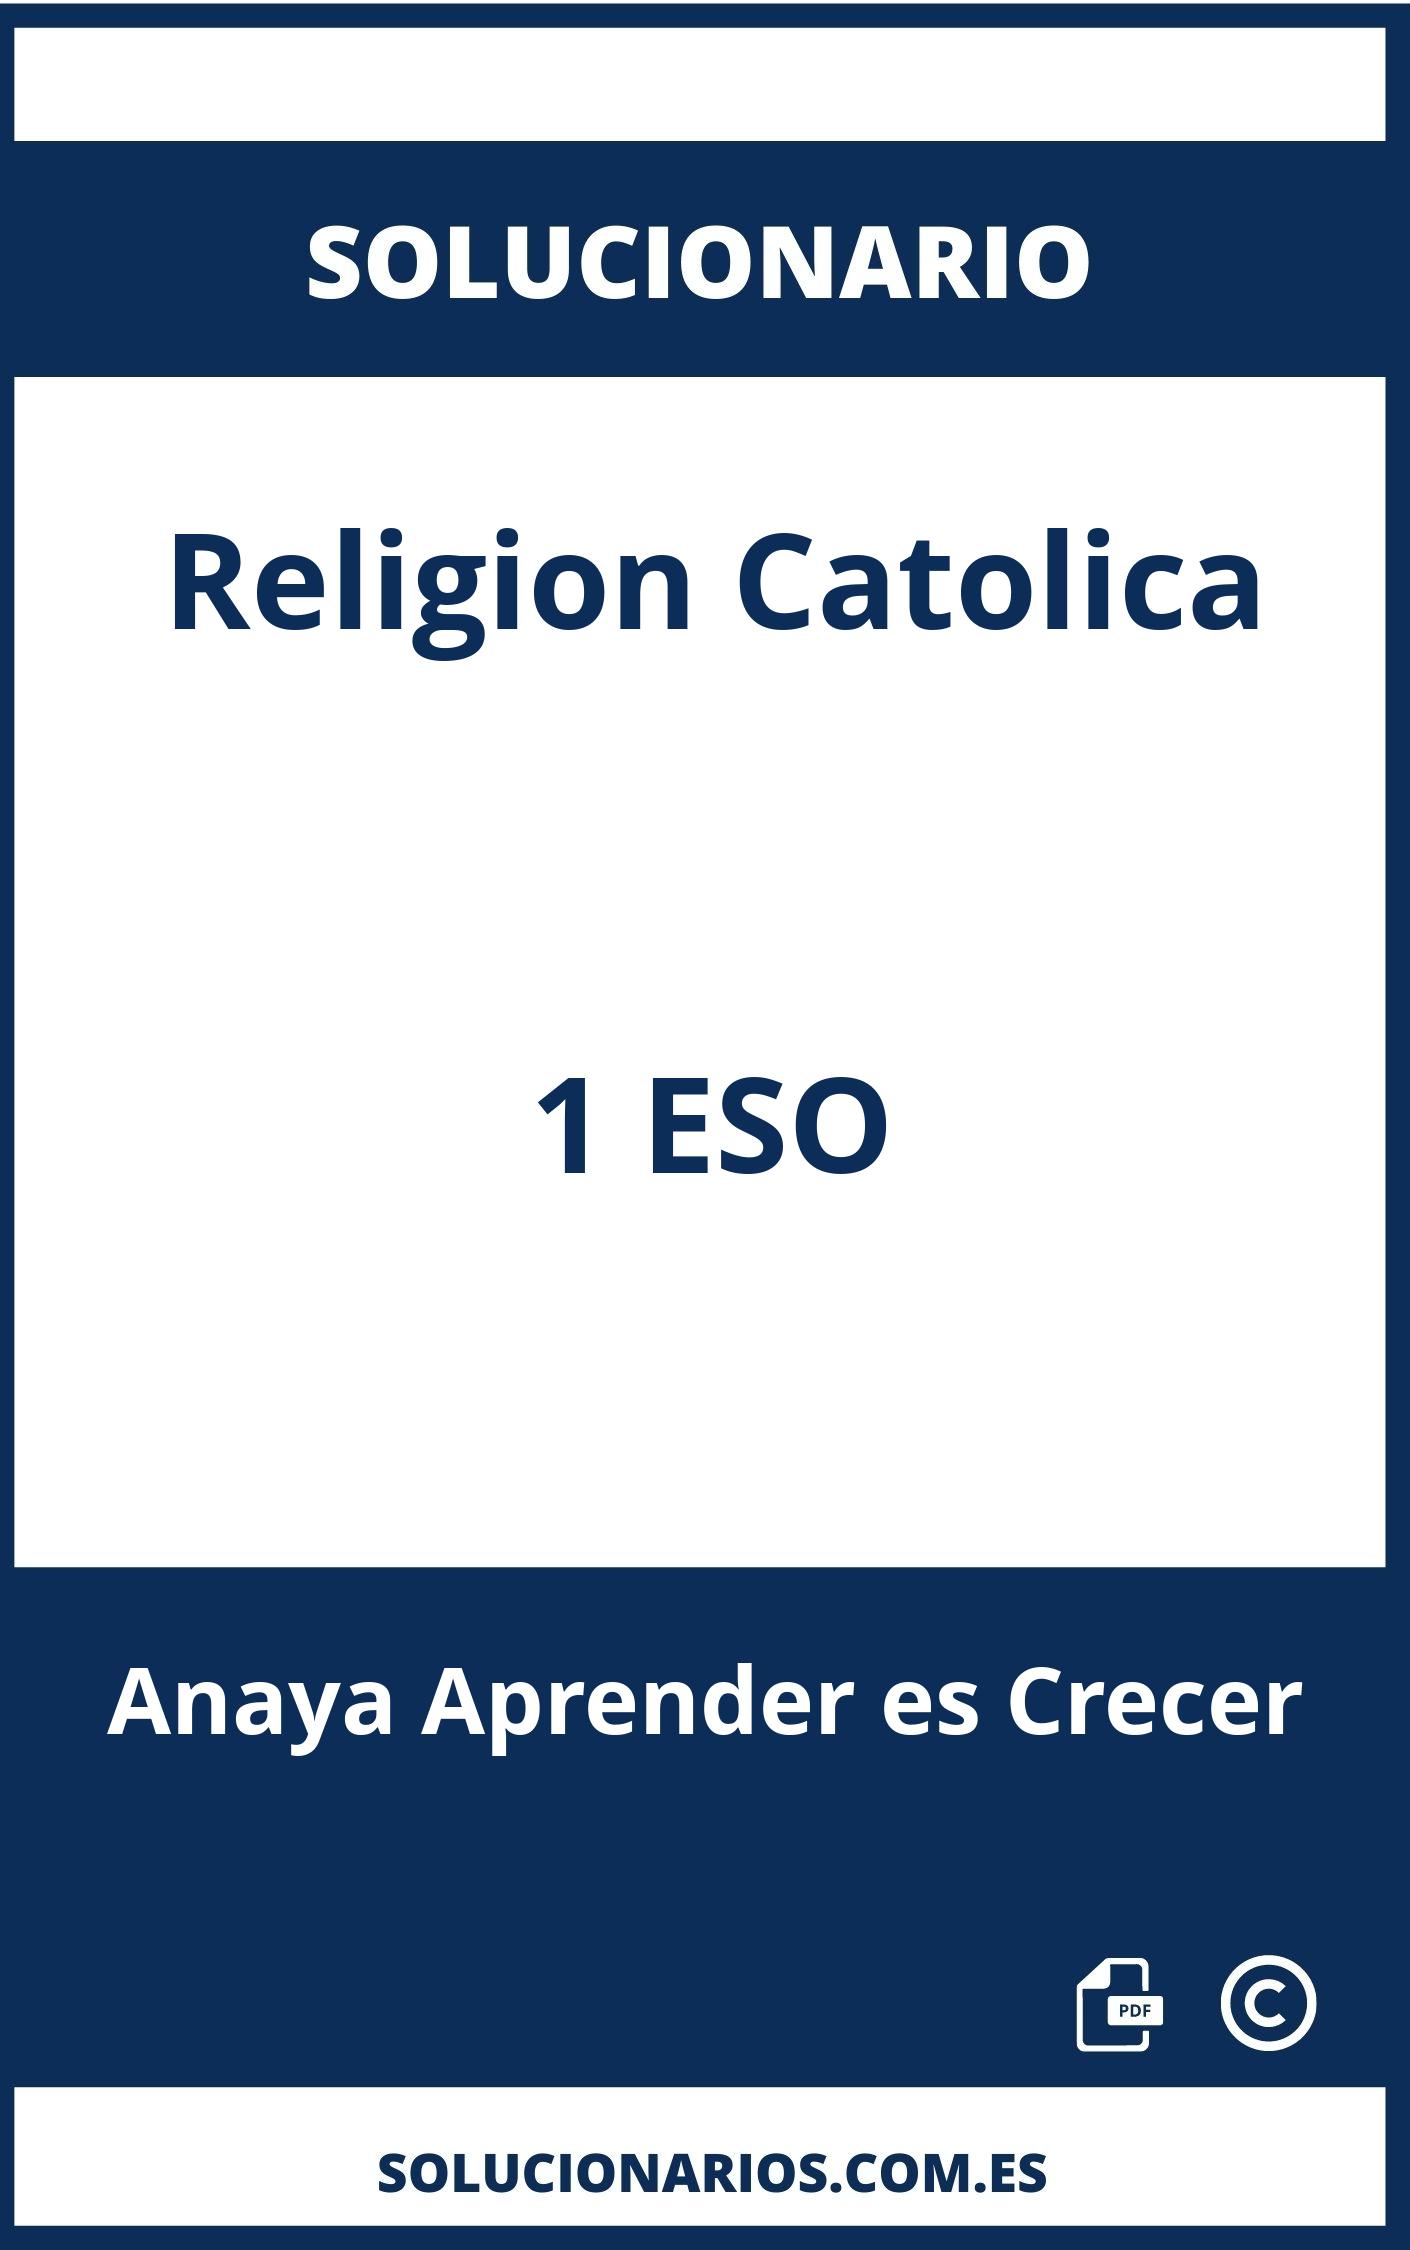 Solucionario Religion Catolica 1 ESO Anaya Aprender es Crecer